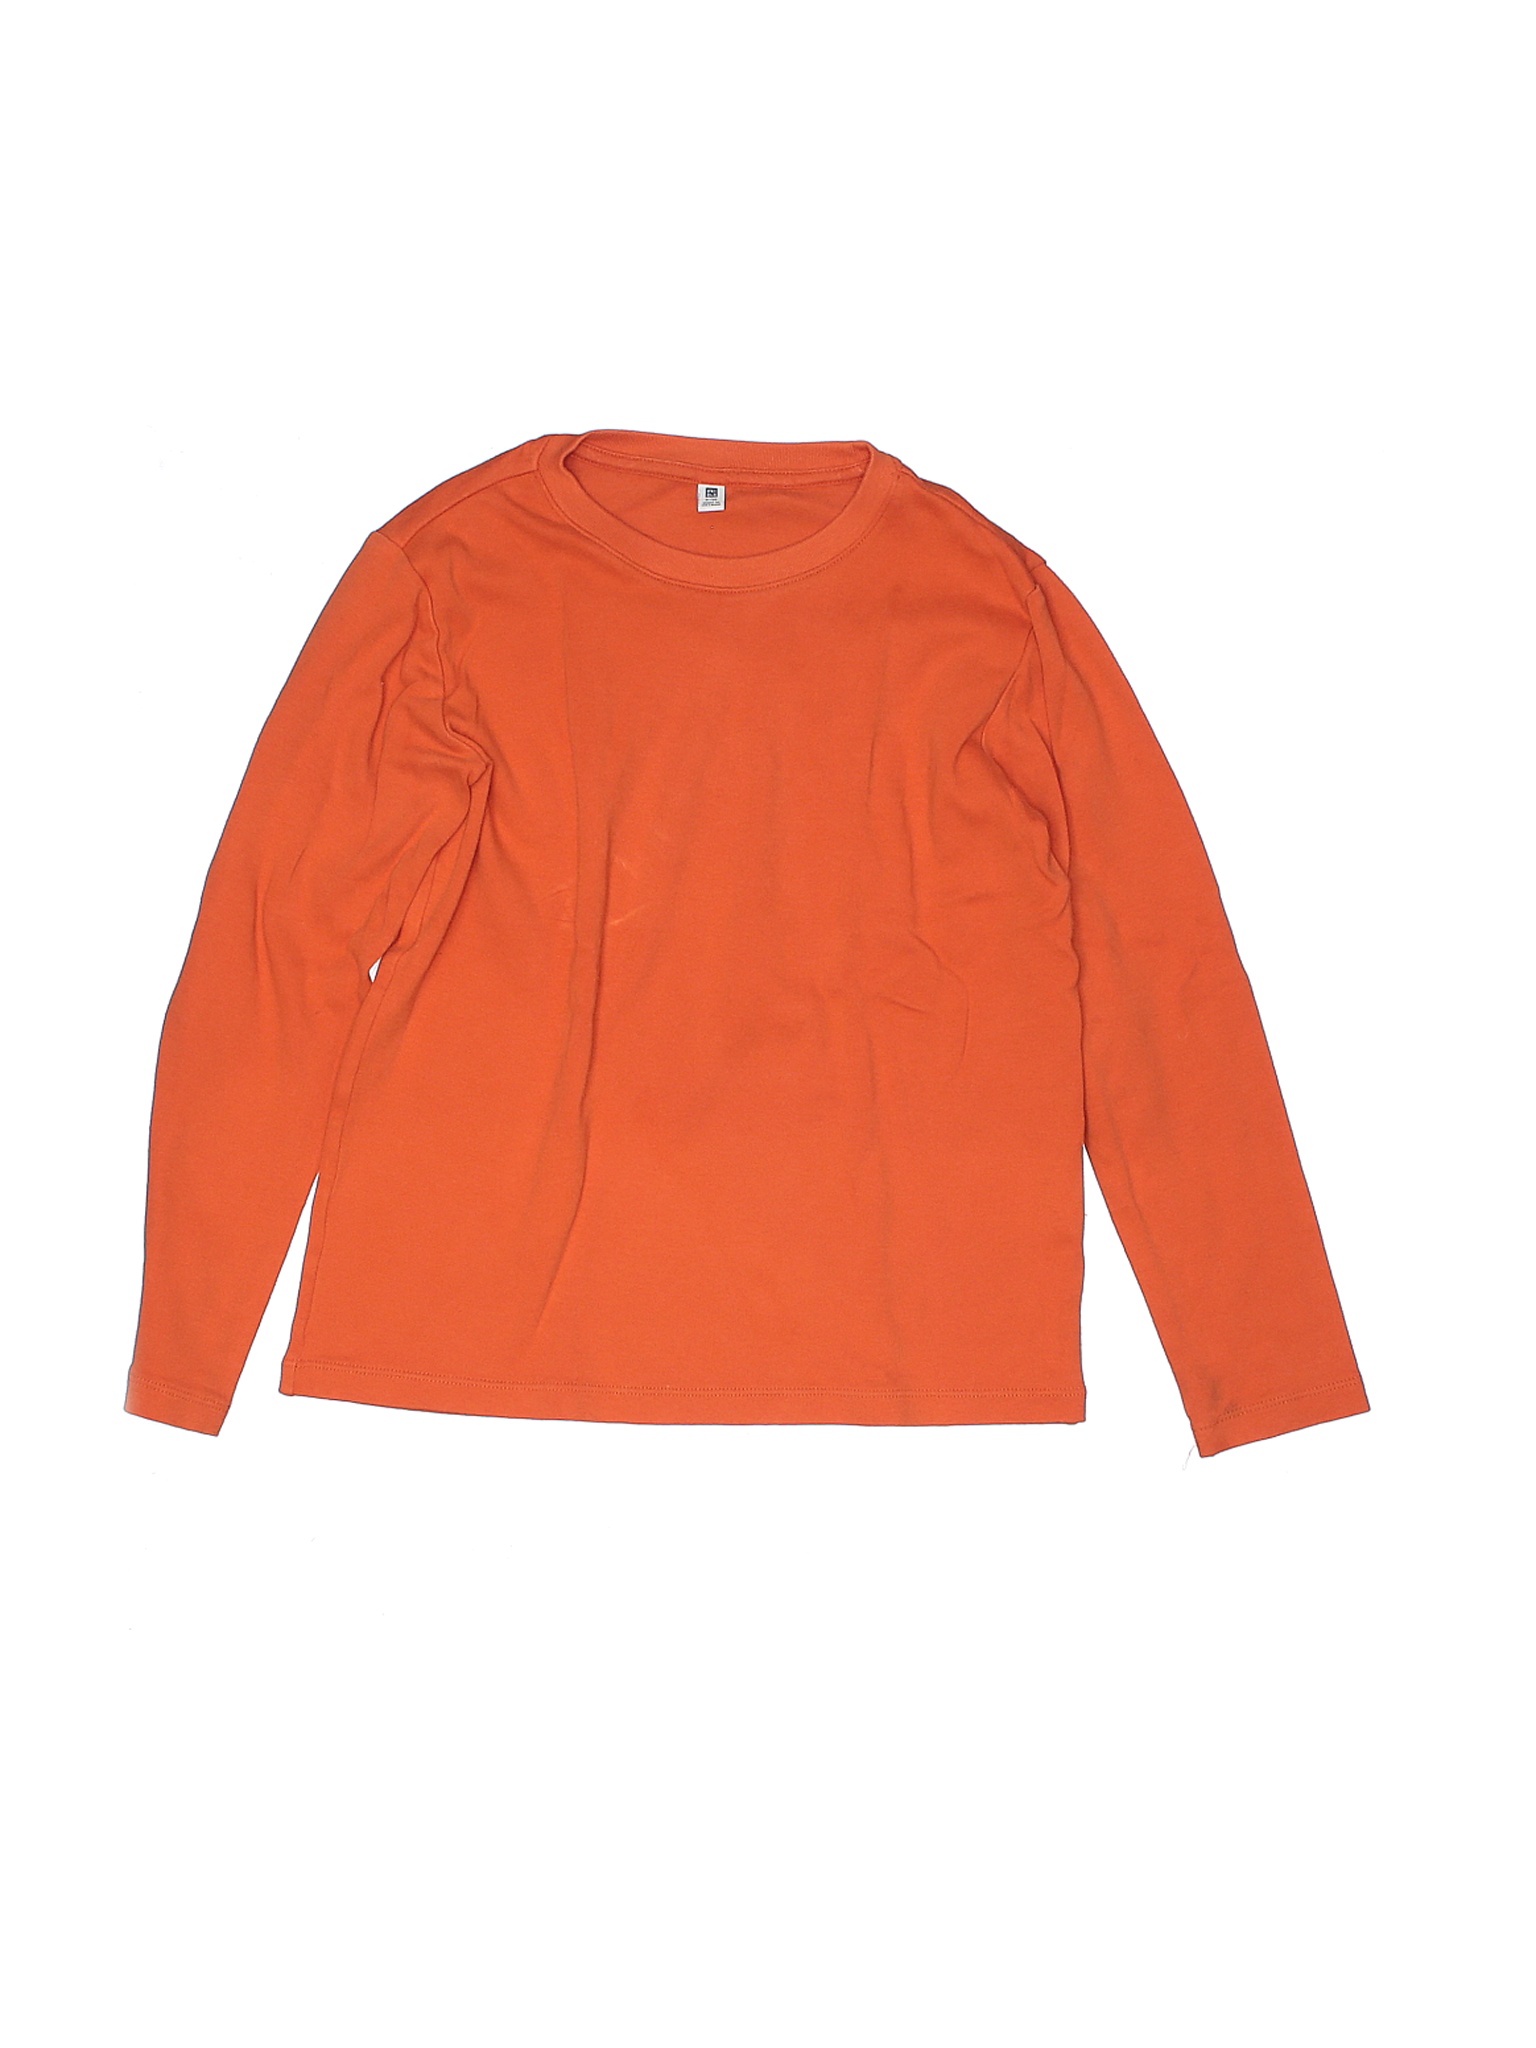 Uniqlo Boys Orange Long Sleeve T-Shirt 9 | eBay